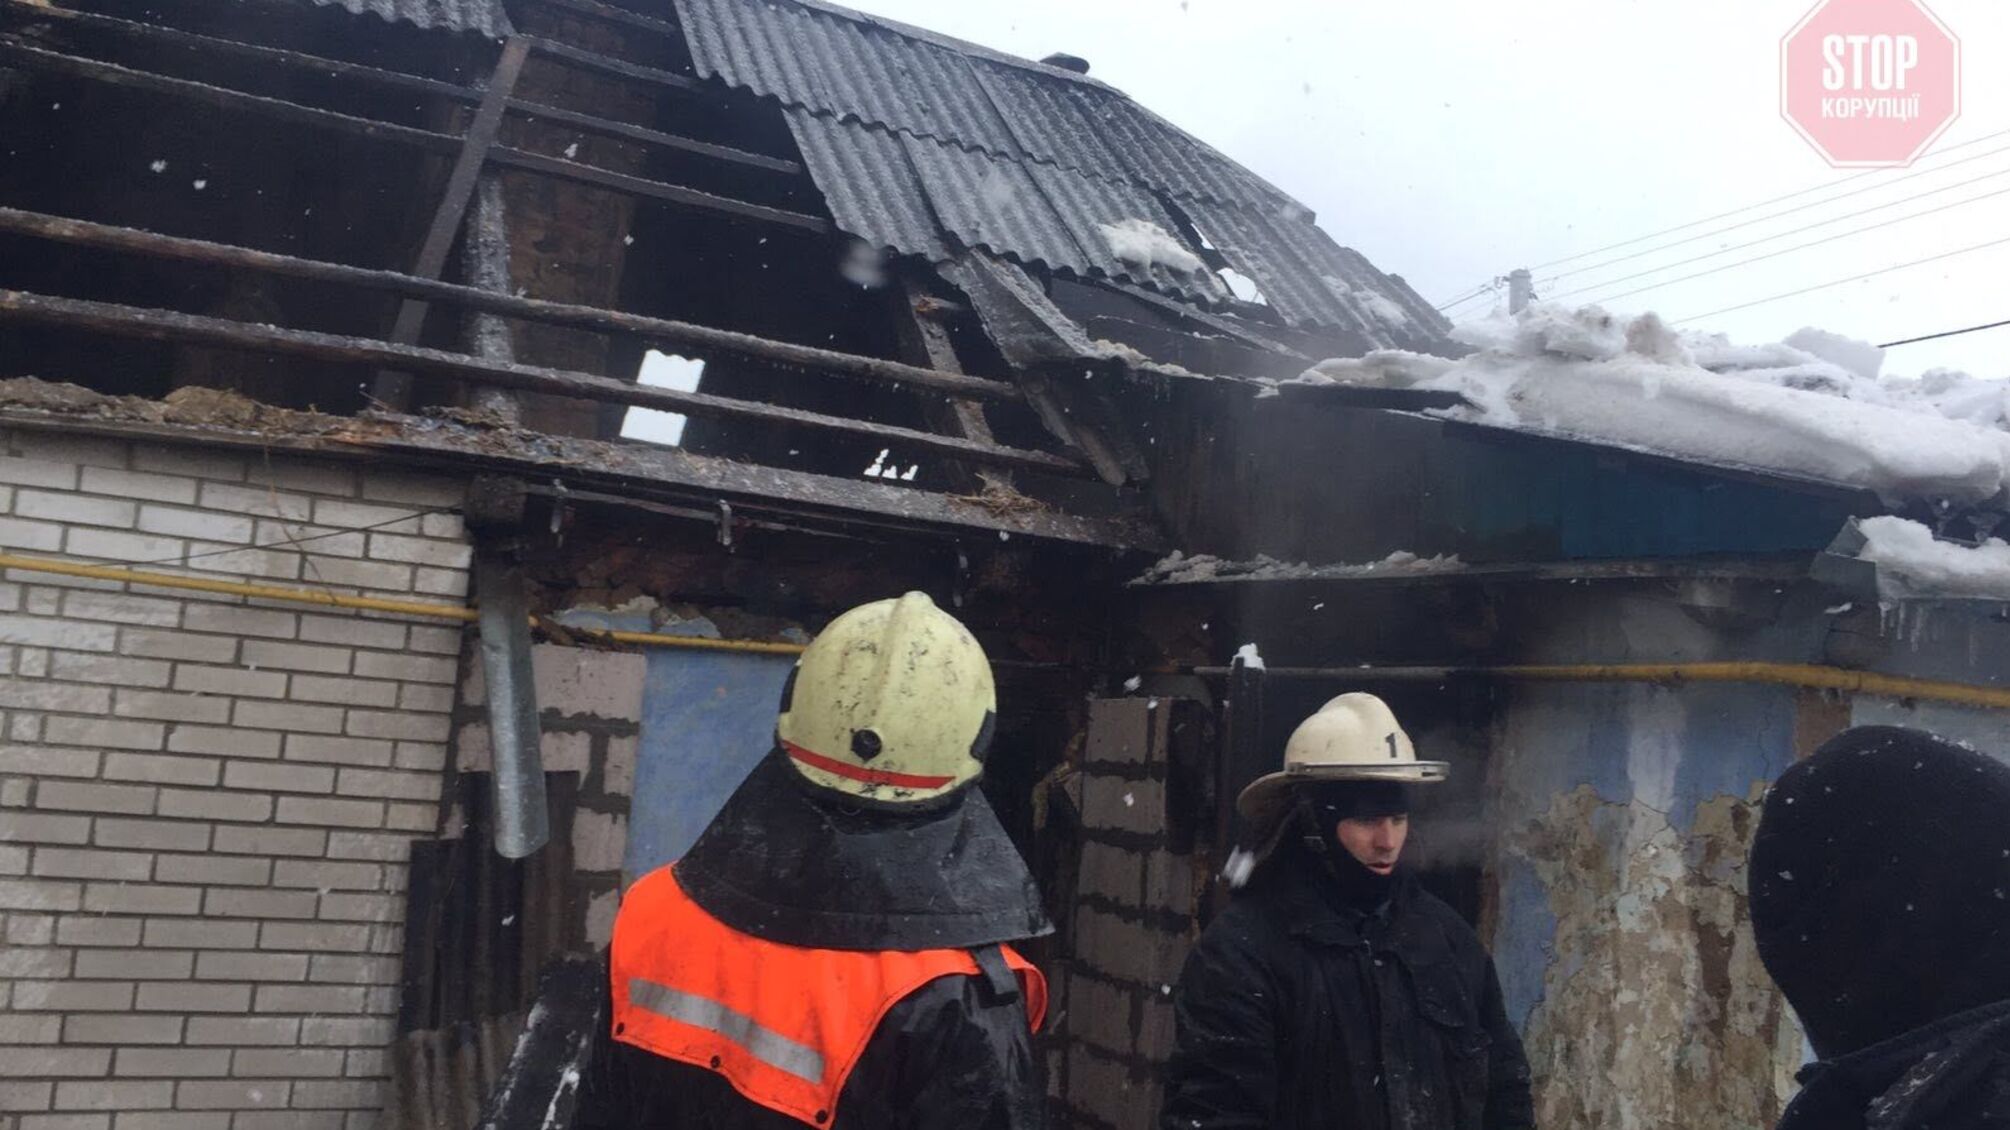 Під Києвом під час пожежі у приватному будинку загинула 5-річна дитина (фото)